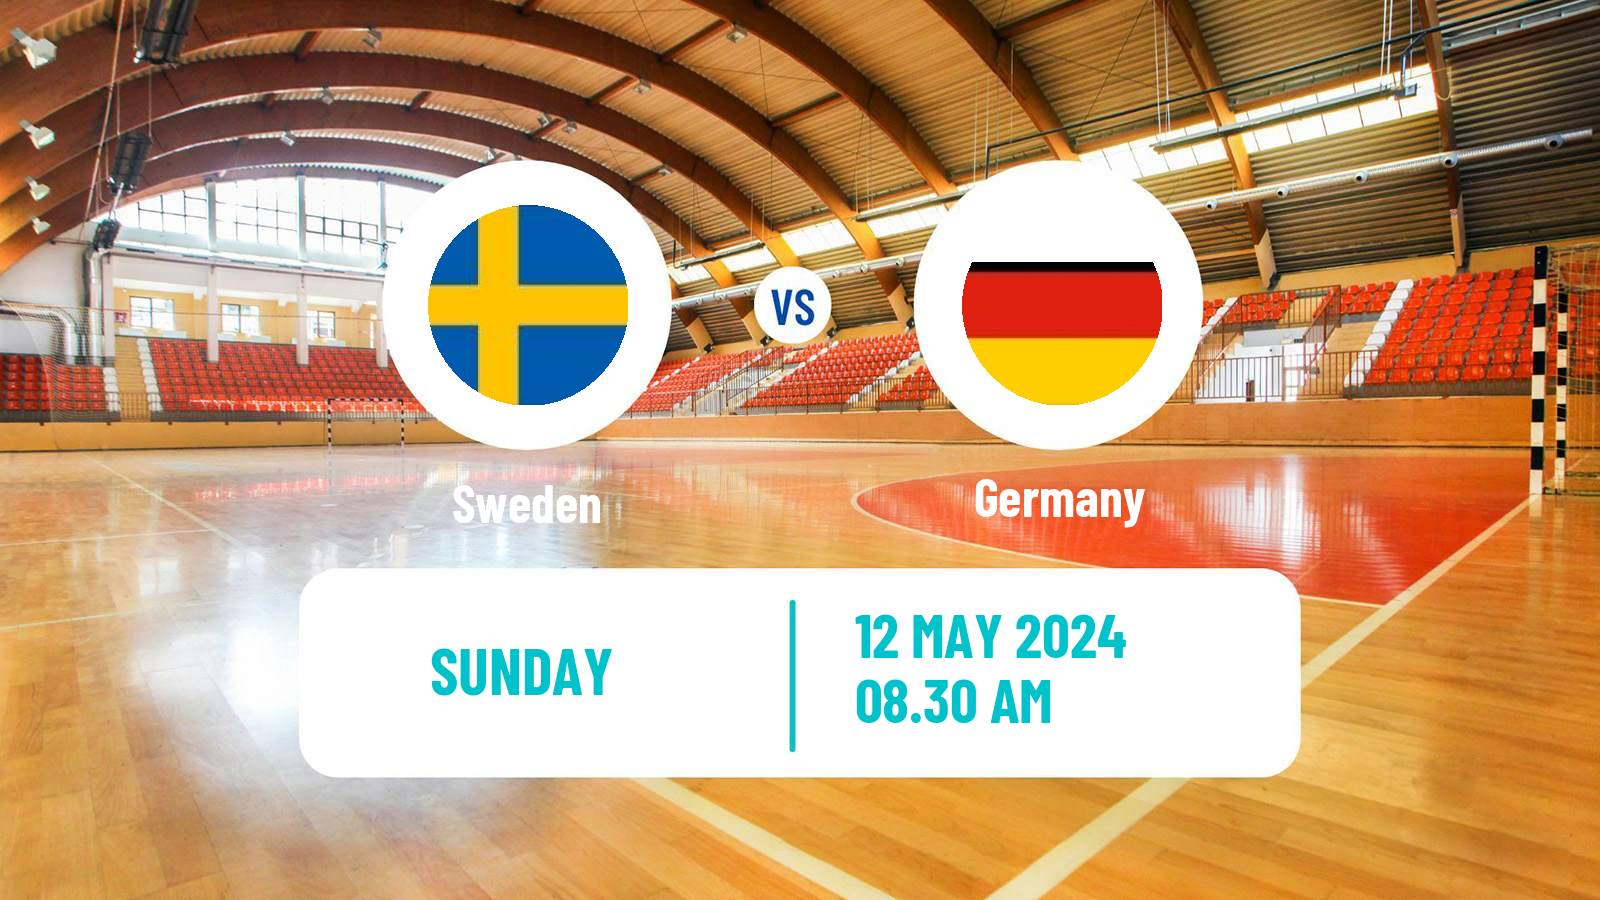 Handball Friendly International Handball Sweden - Germany